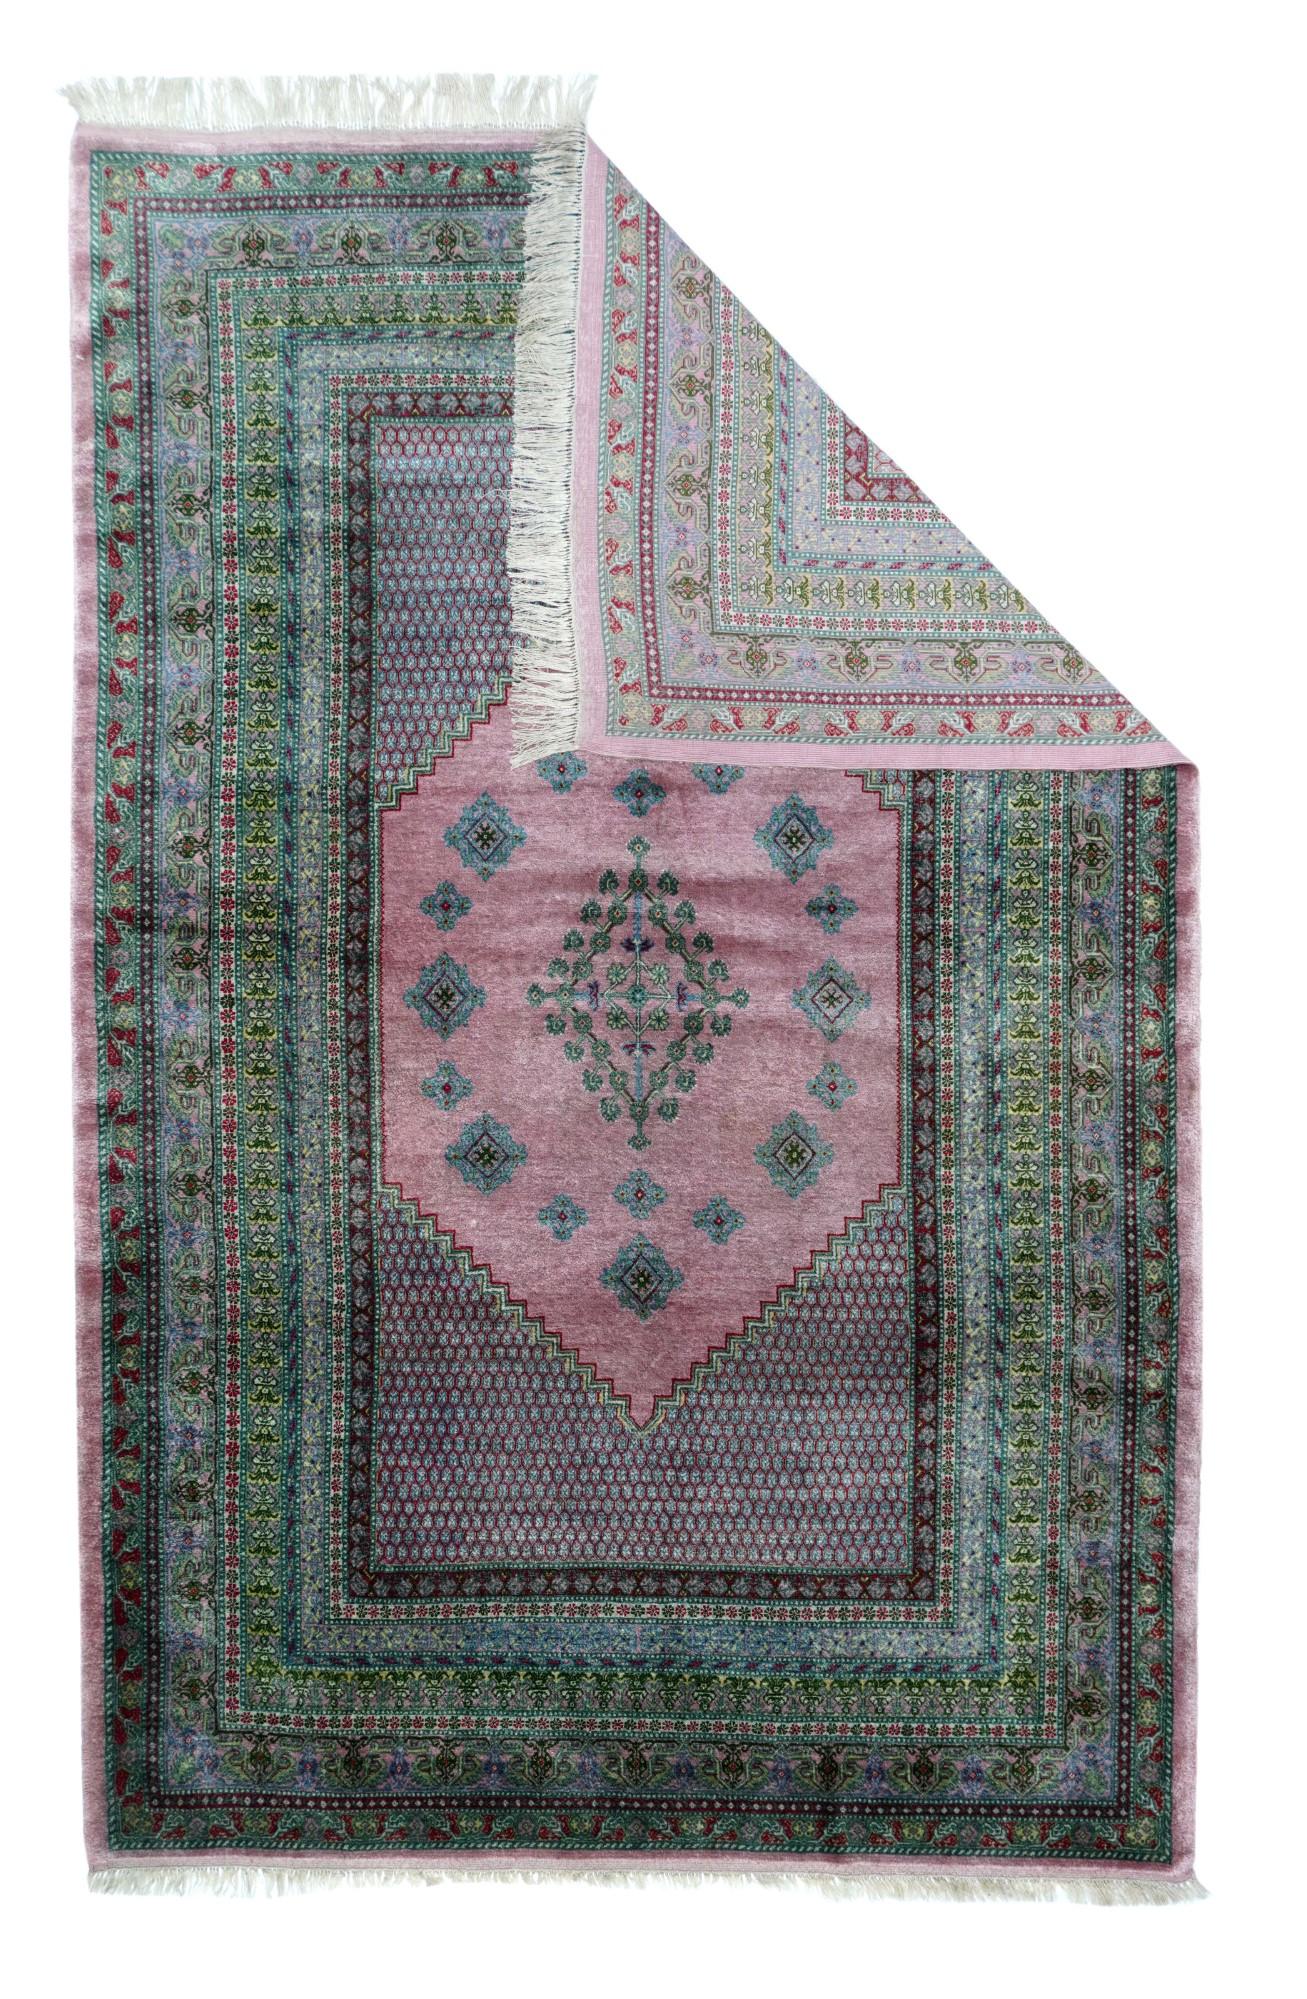 Vintage Indian Kashmiri Teppich misst 4'1'' x 6'3''. Dieser fein geknüpfte Streuteppich in gutem Zustand zeigt eine perlmuttartige Farbpalette aus Sandbeige, Hellblau, Hellbraun und Blassgrün. Der Stil ist im Wesentlichen anatolisch, aber verfeinert